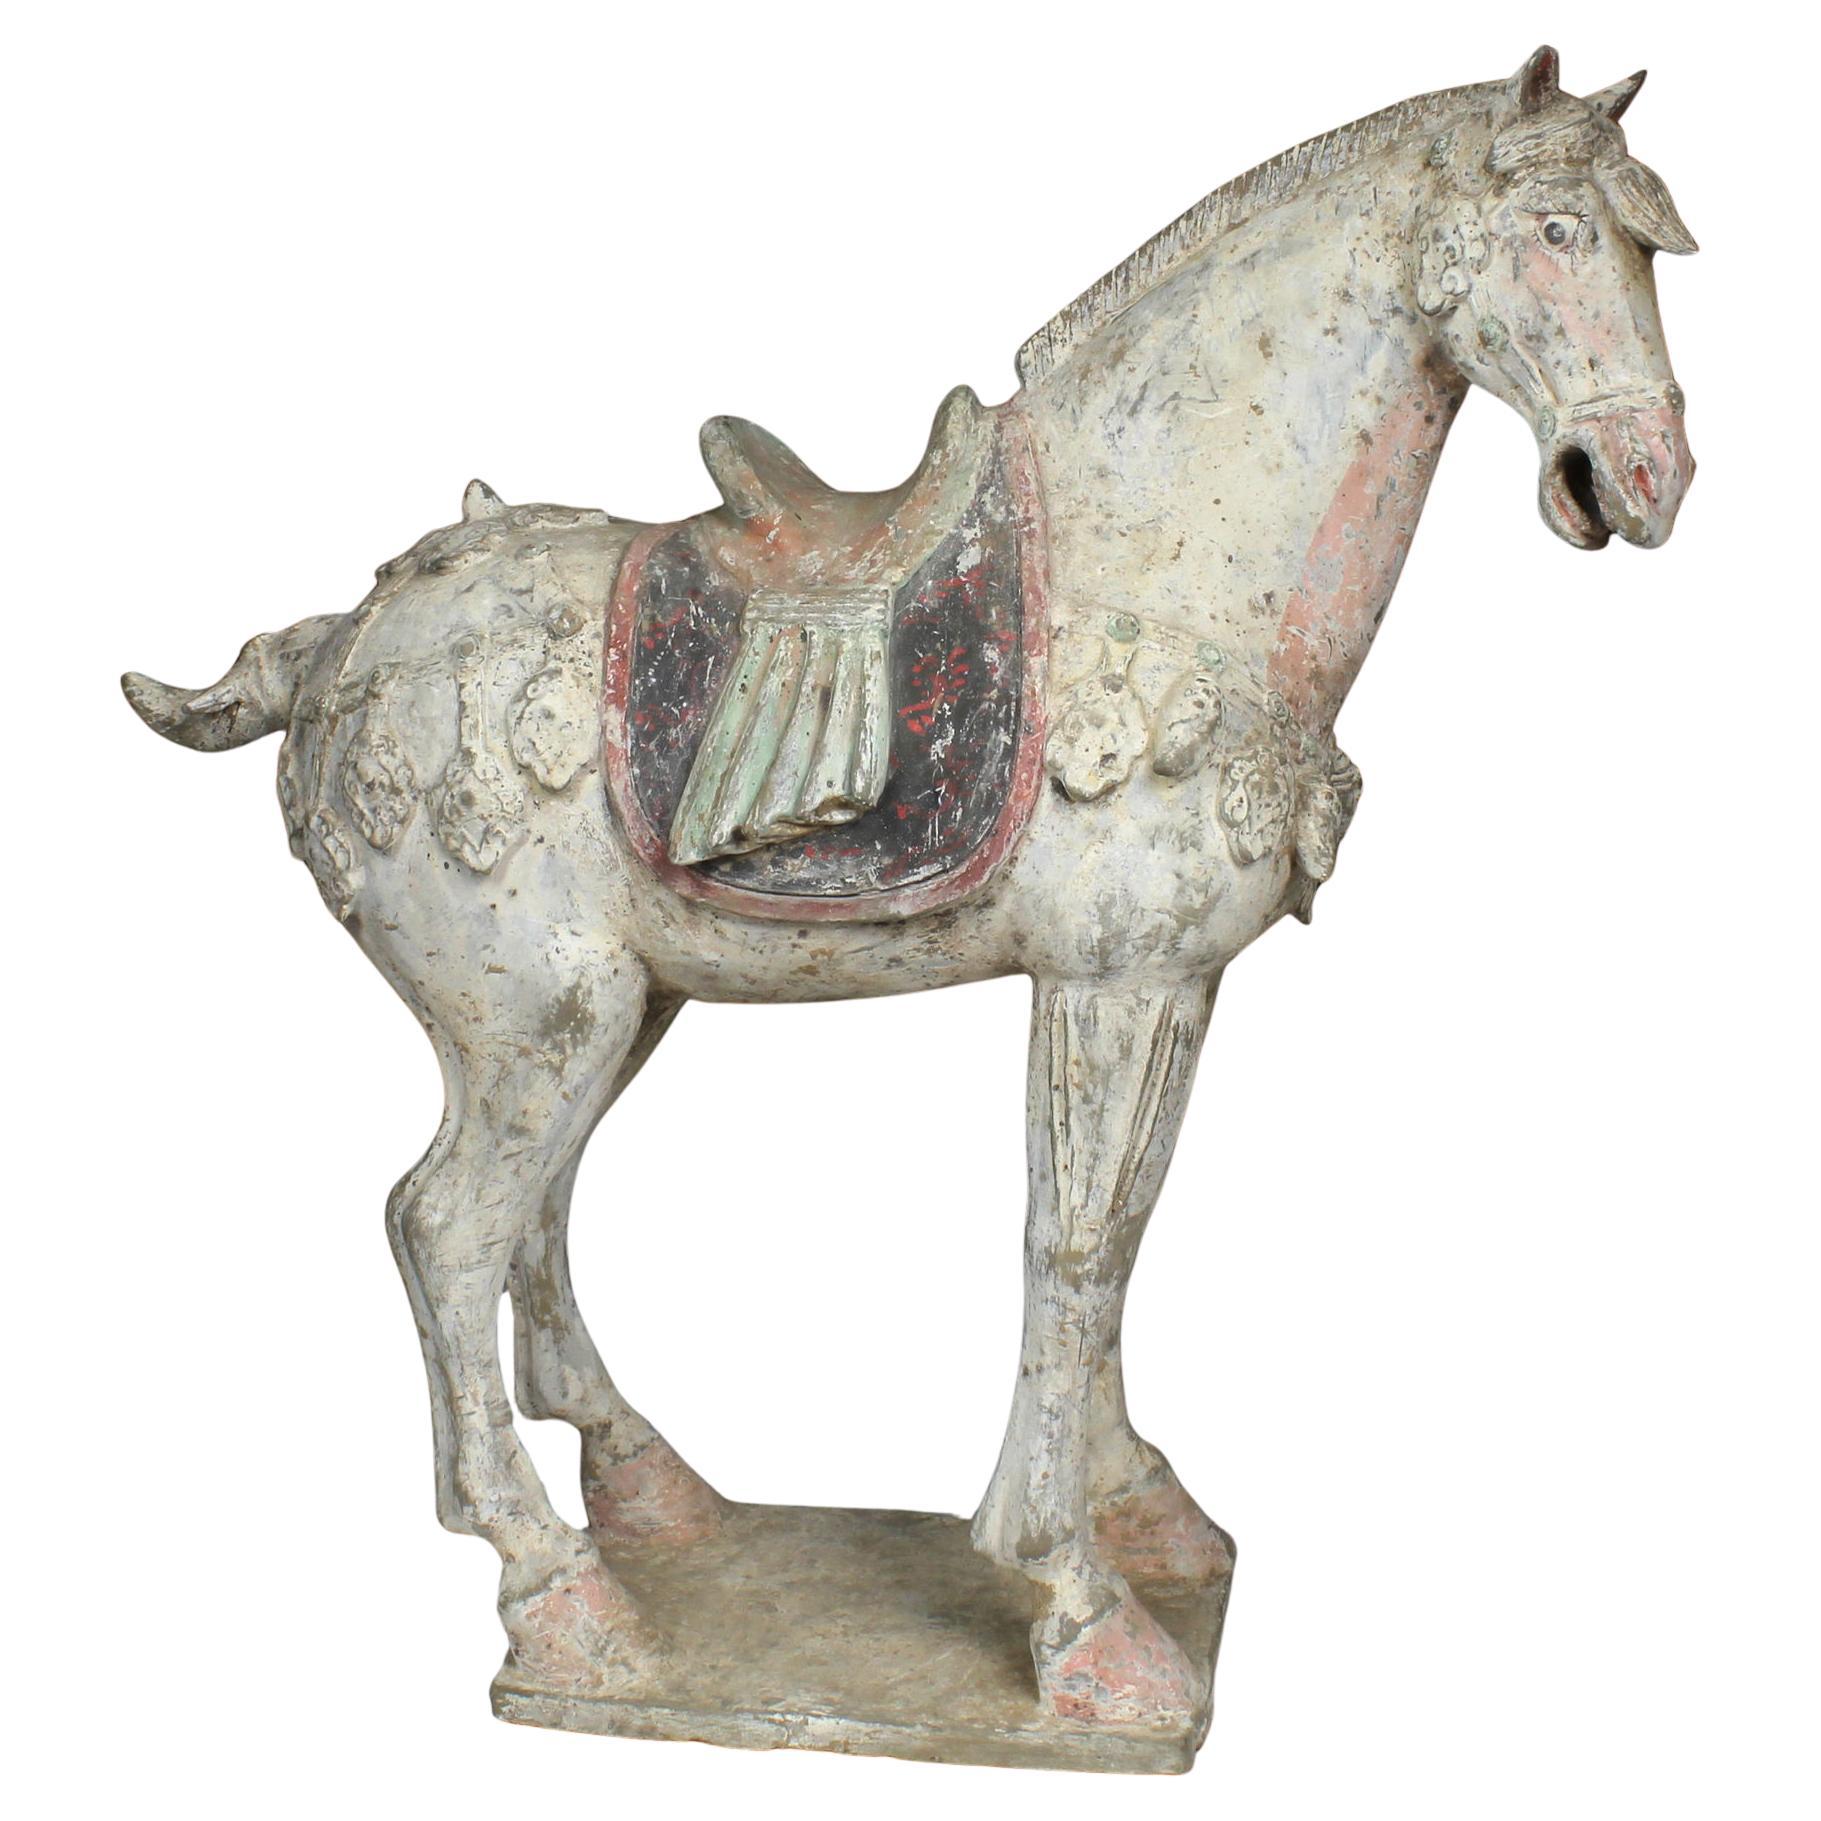 Chinesische Statuette eines Pferdes